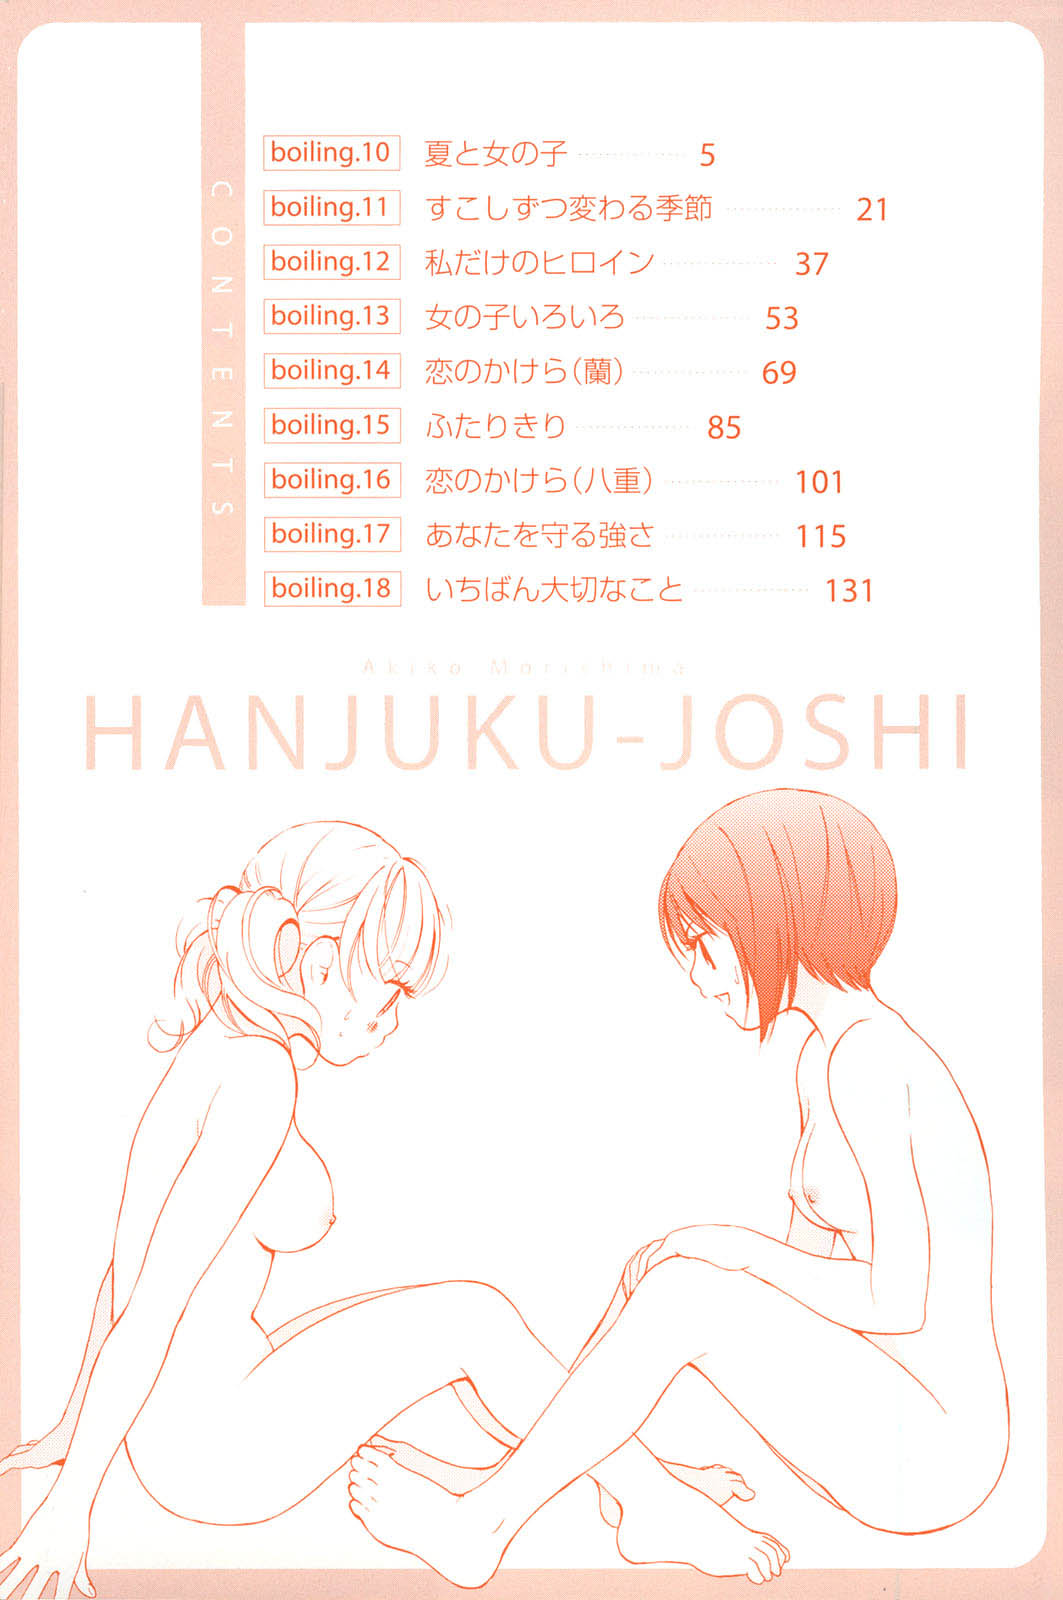 [Akiko Morishima] Hanjuku Joshi Vol.2 (Complete)[English] 